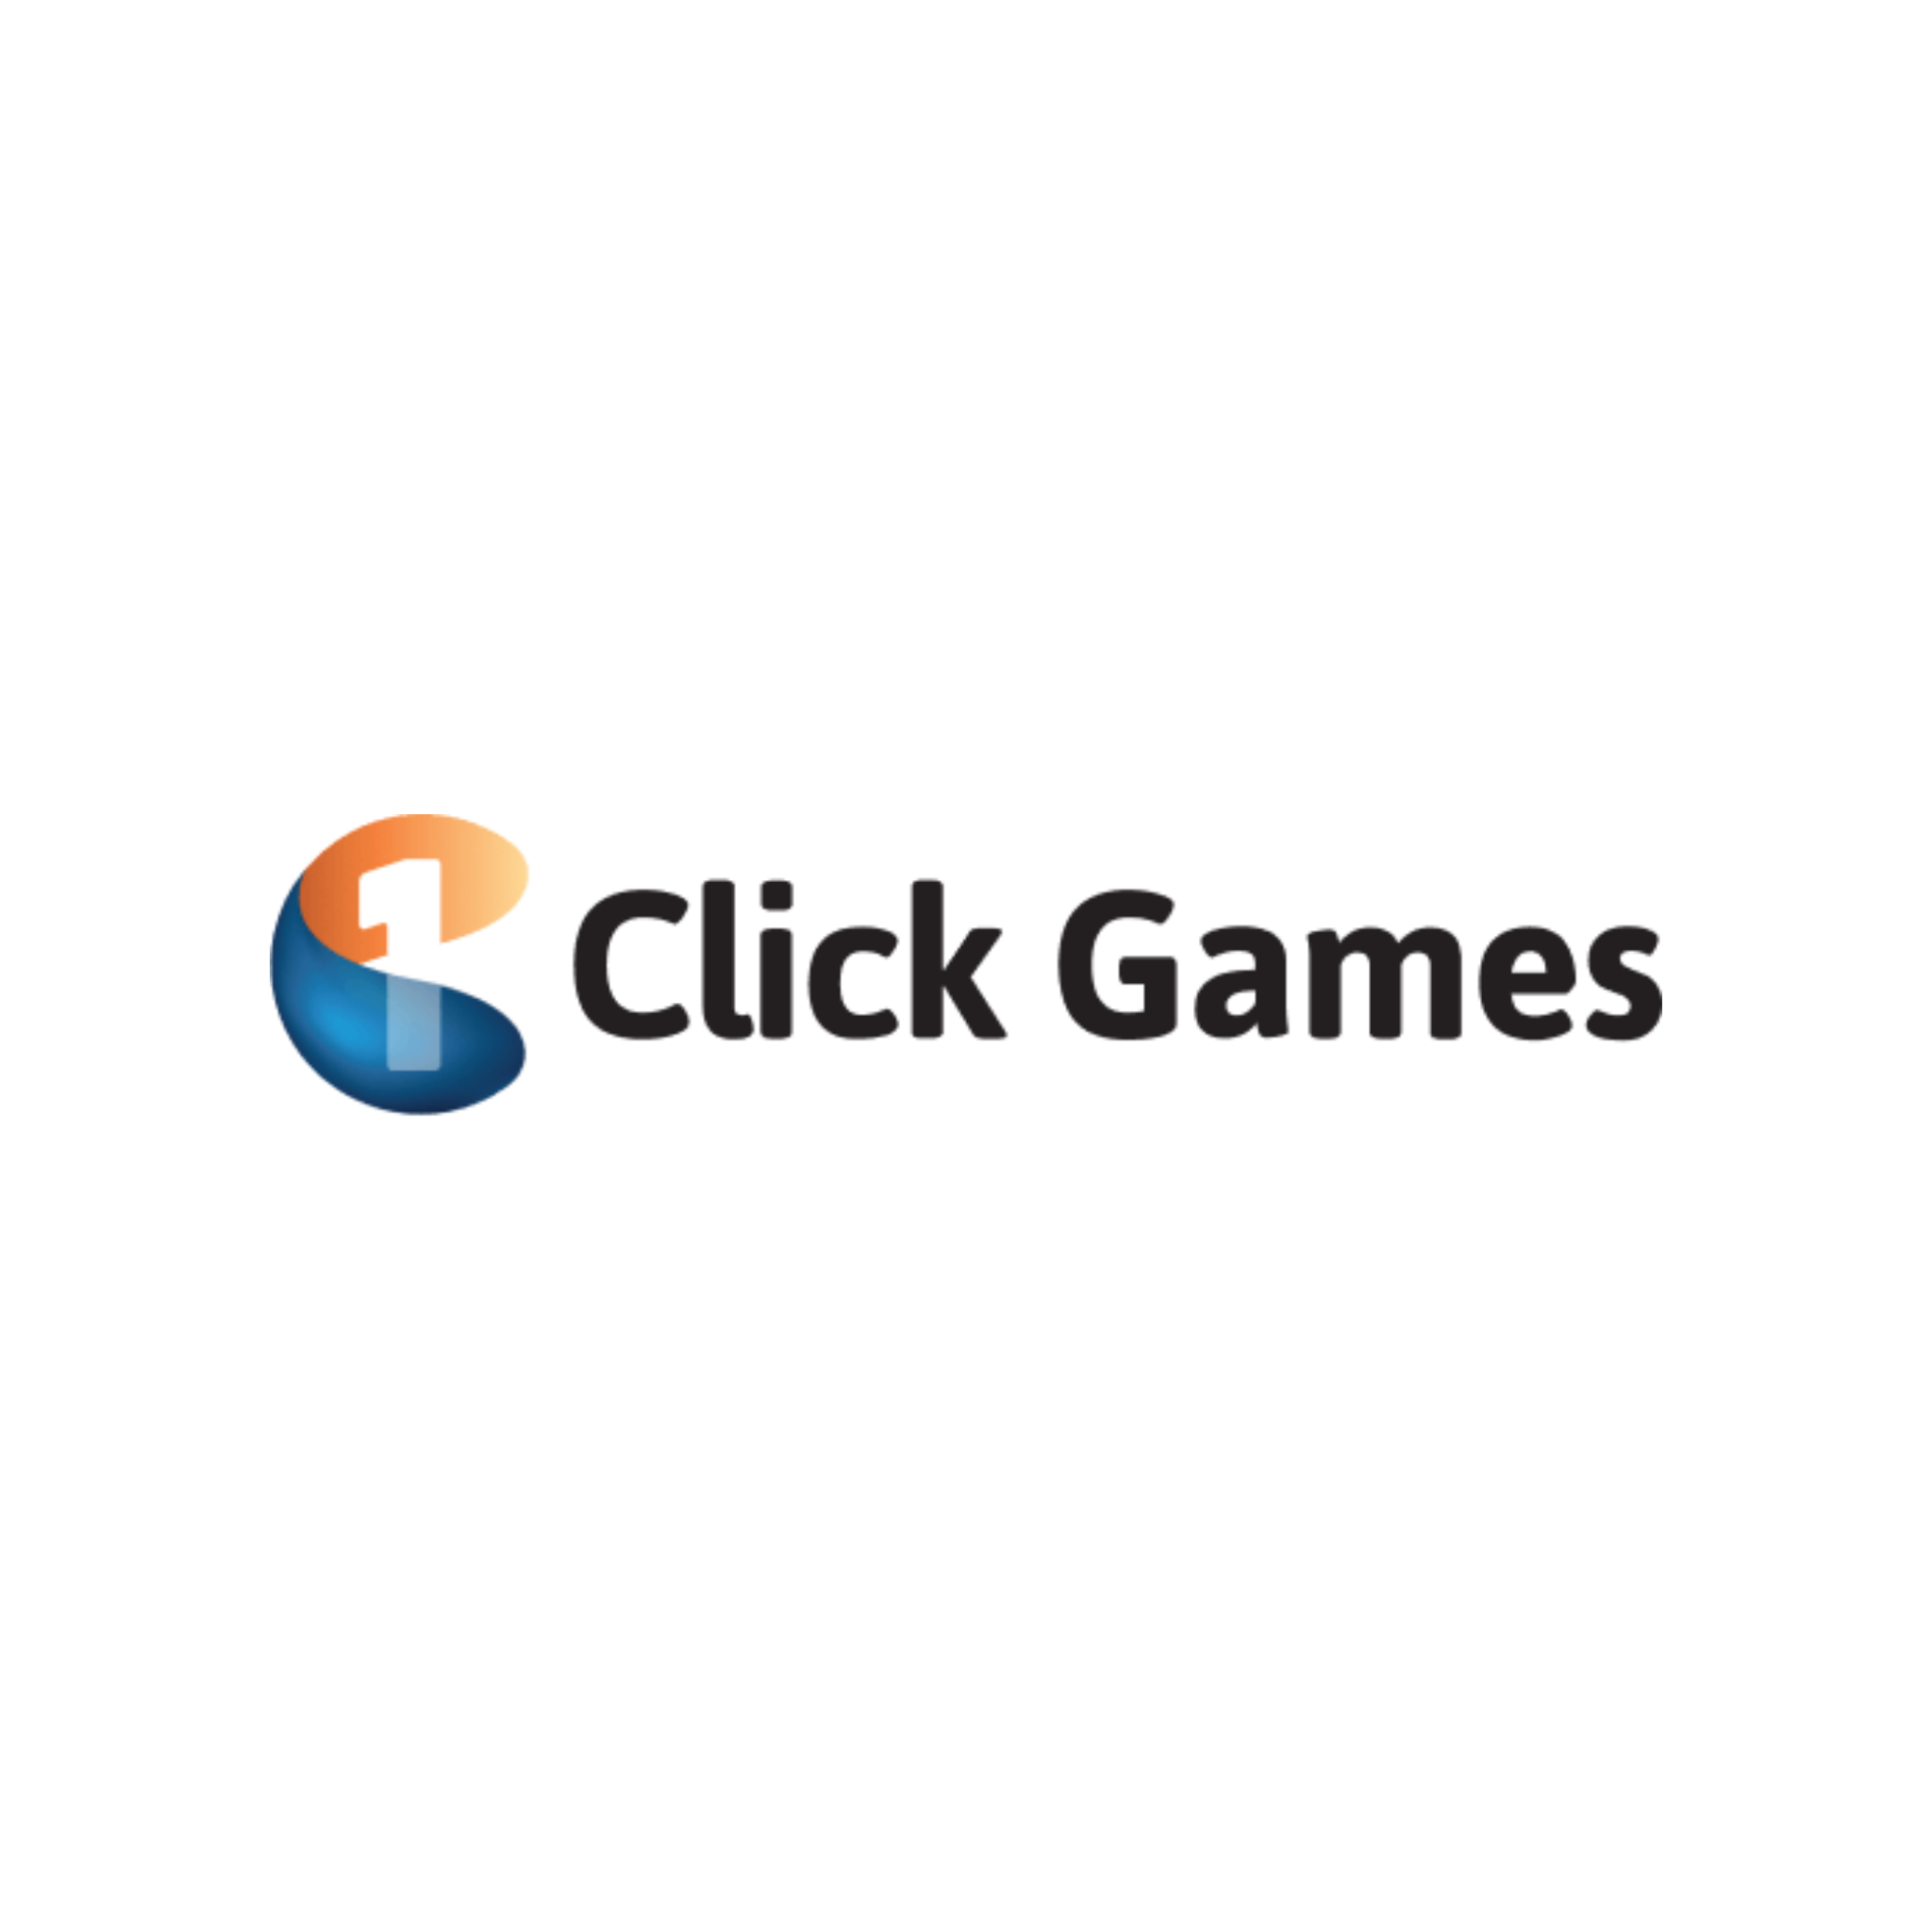 1Click Games